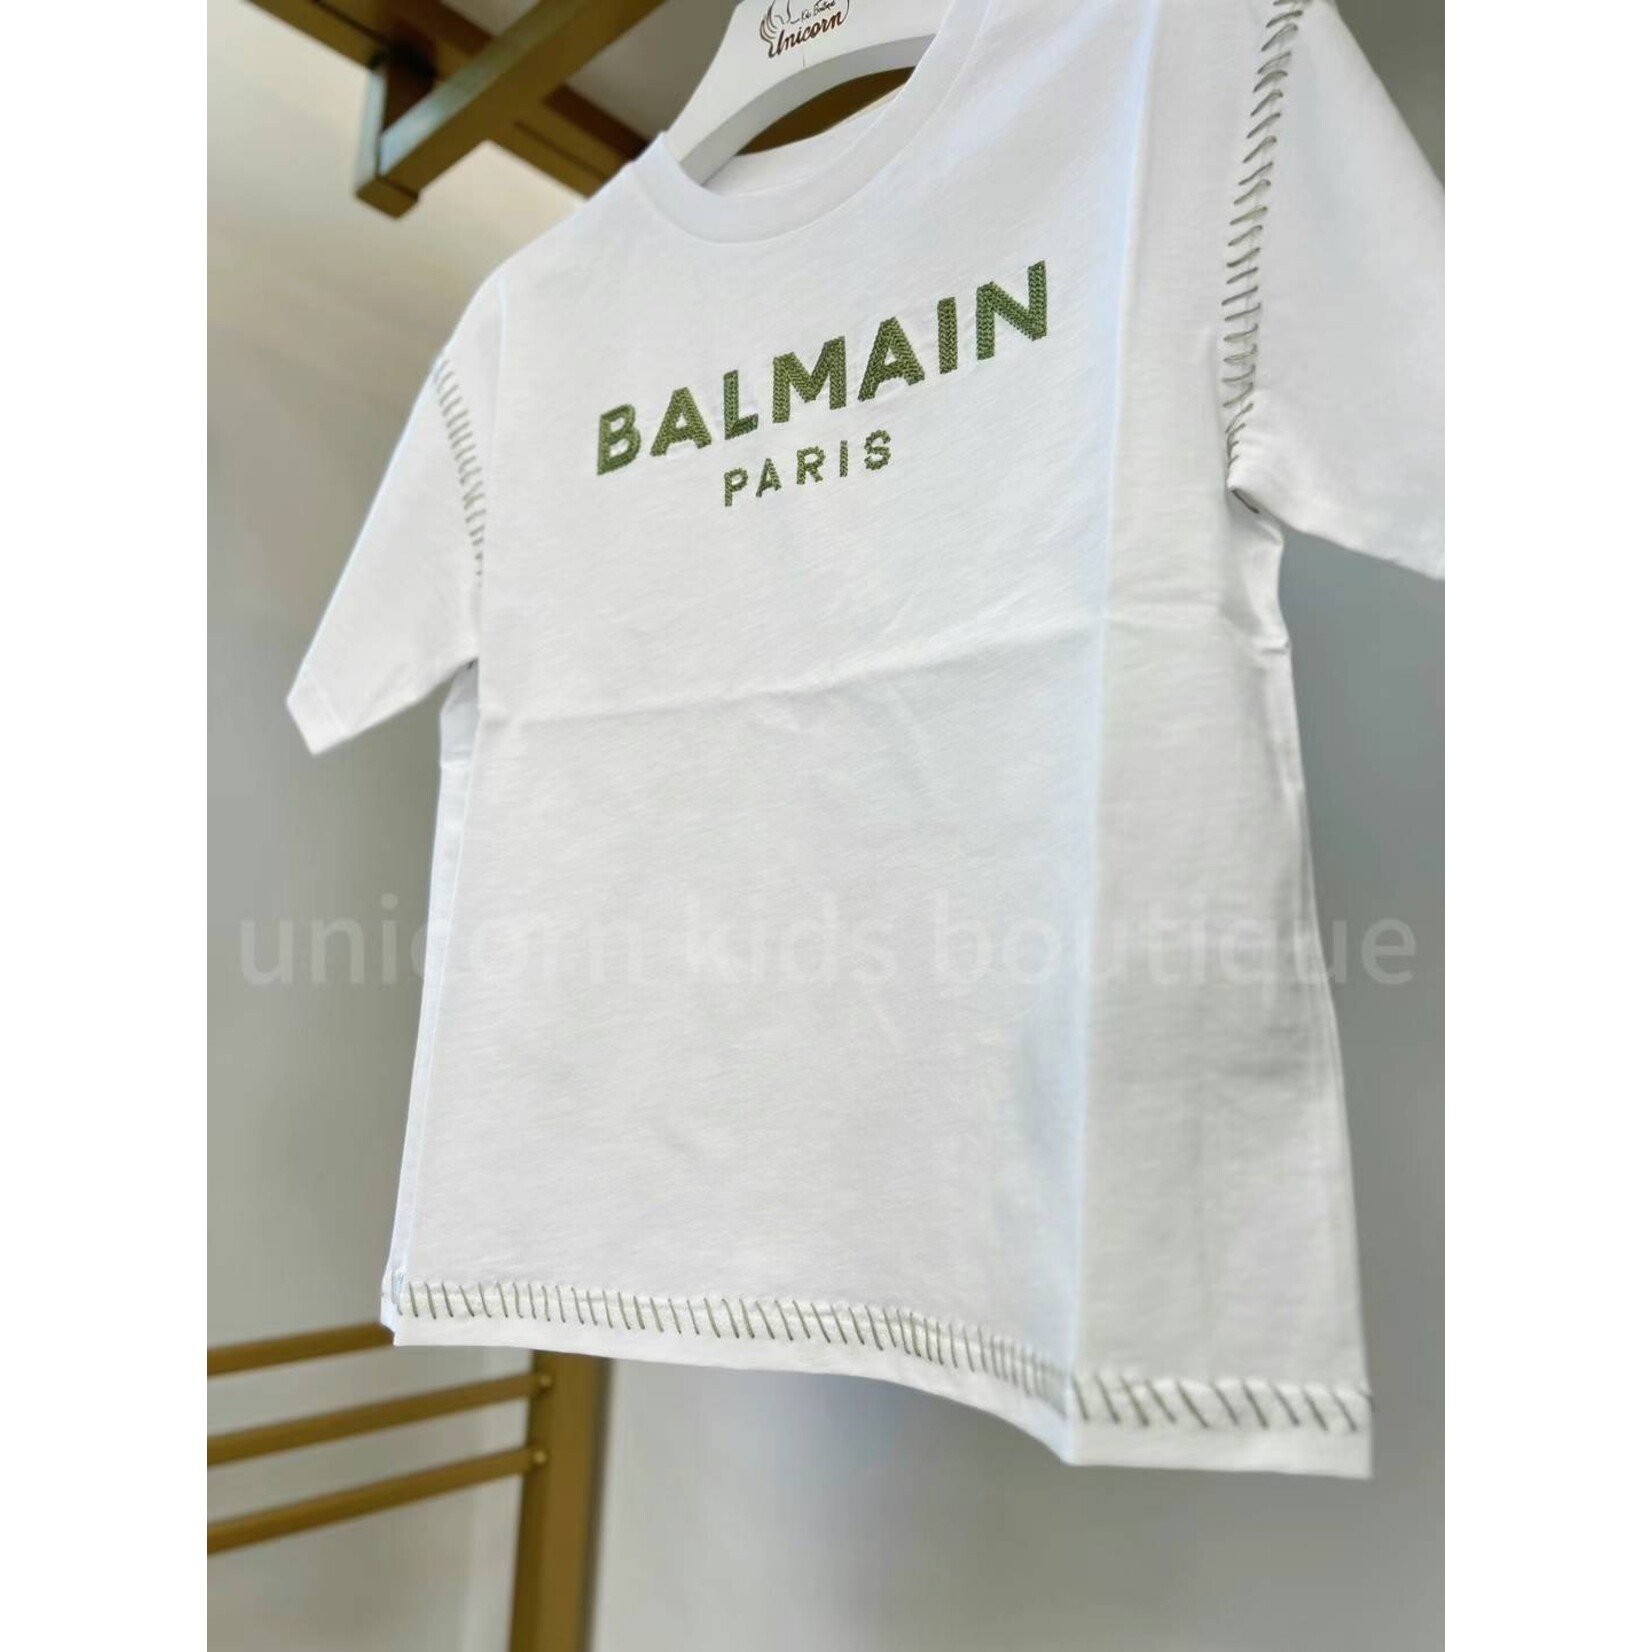 Balmain Balmain Green Logo Kids T-Shirt